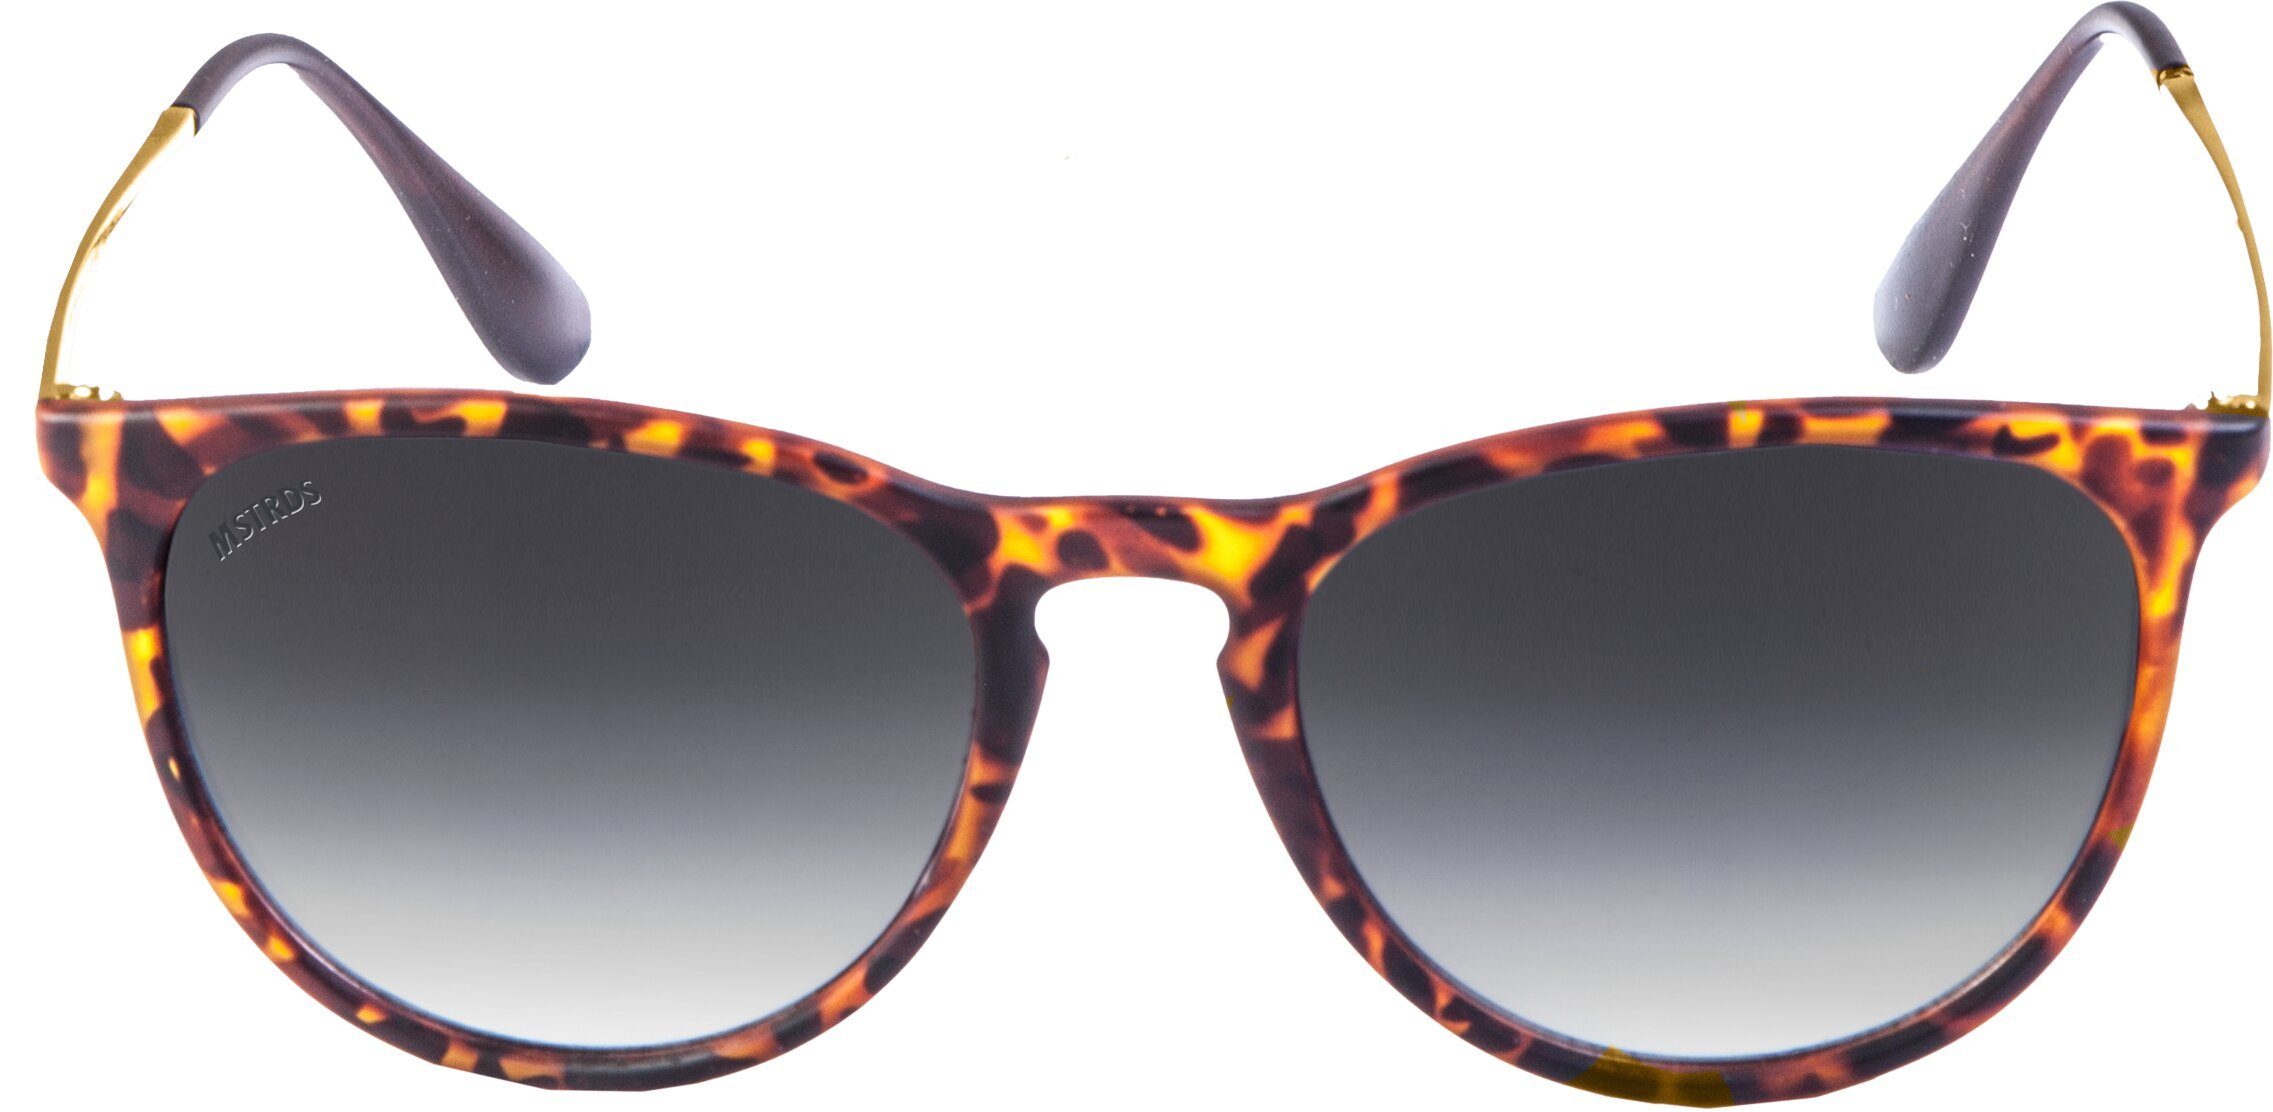 MSTRDS Sonnenbrille Accessoires Sunglasses Arthur havanna/grey